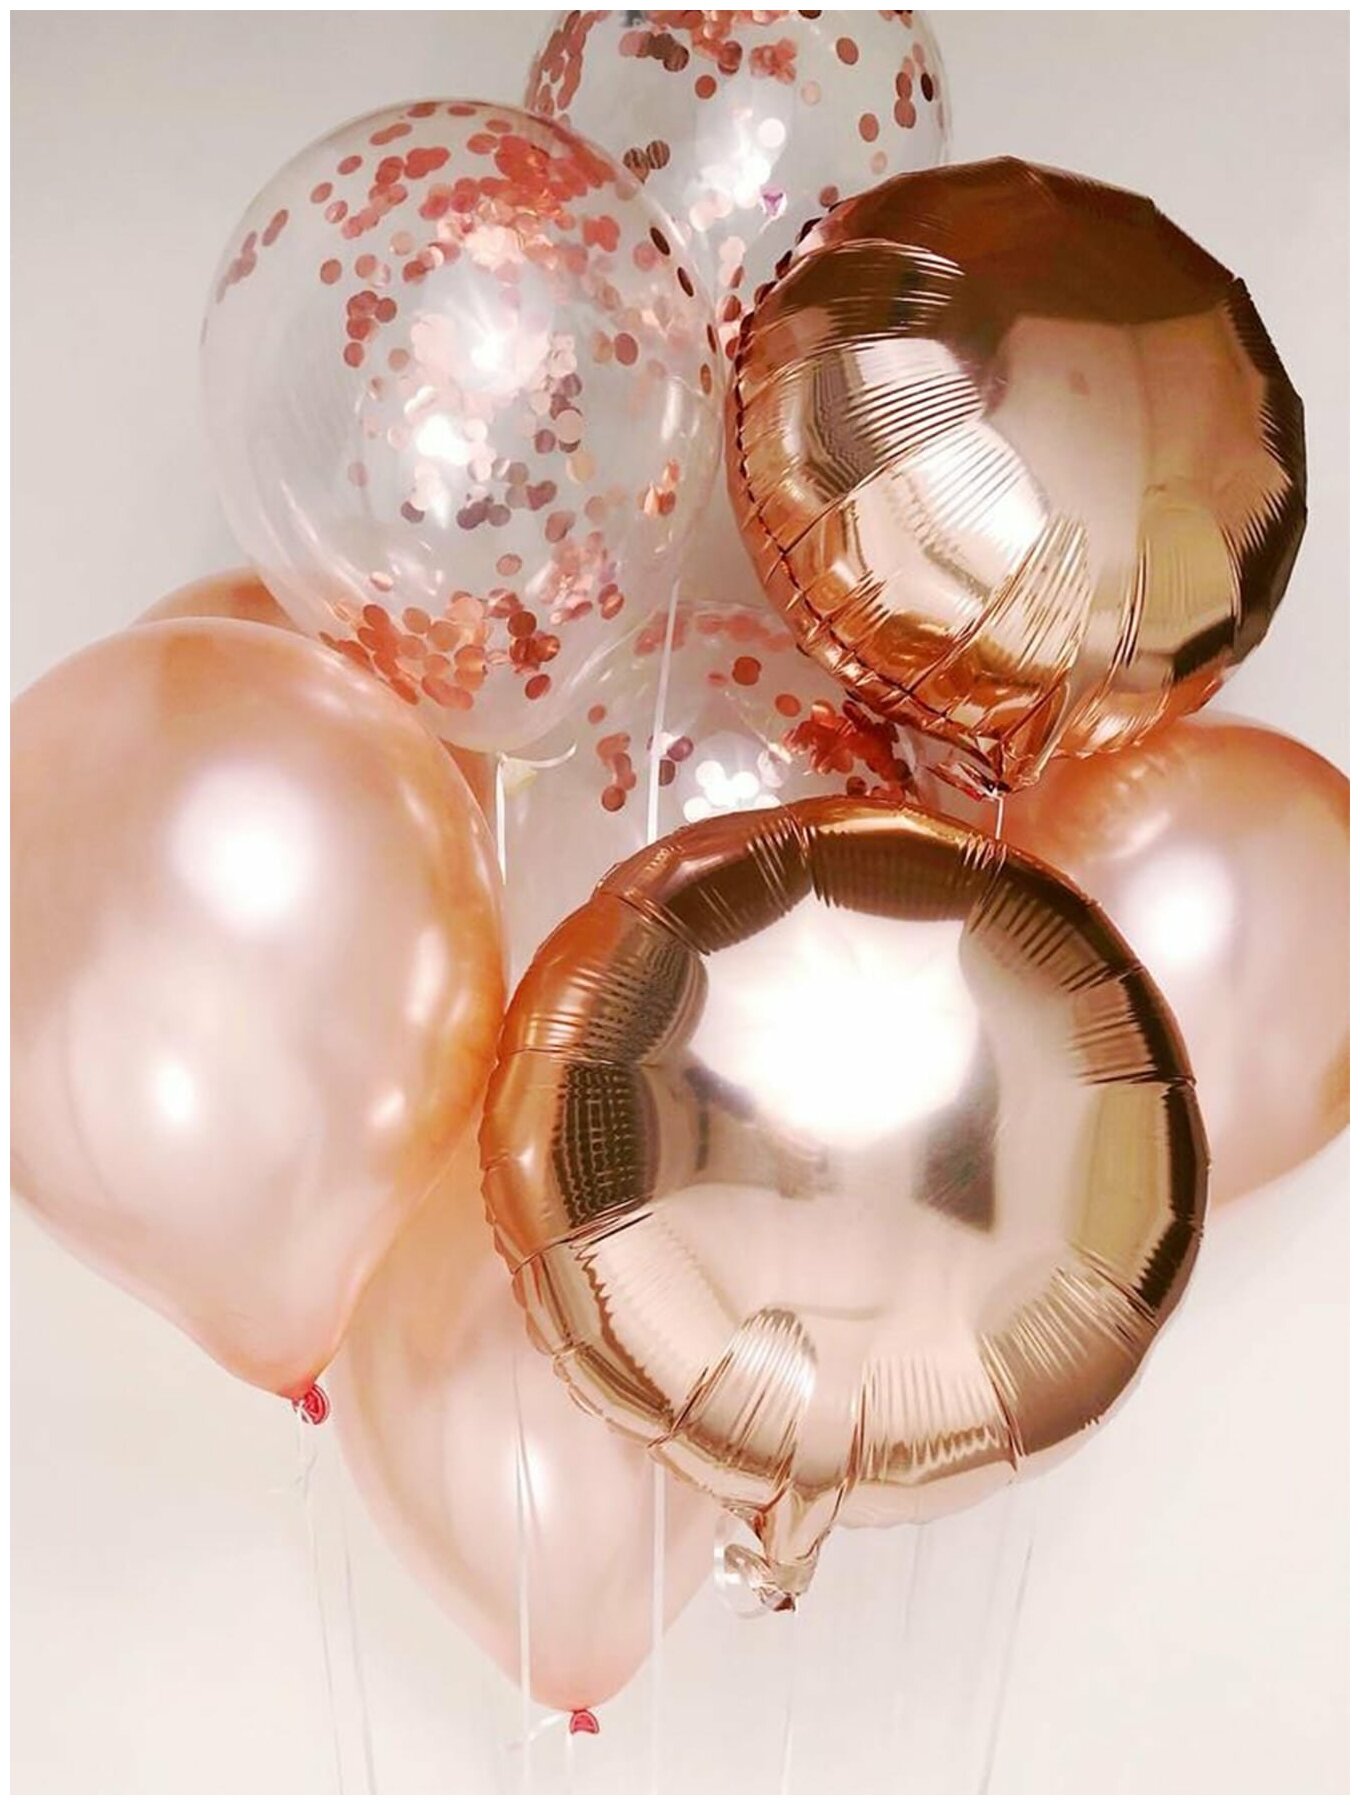 Букет из воздушных шаров с гелием Розовое золото, 9 шт